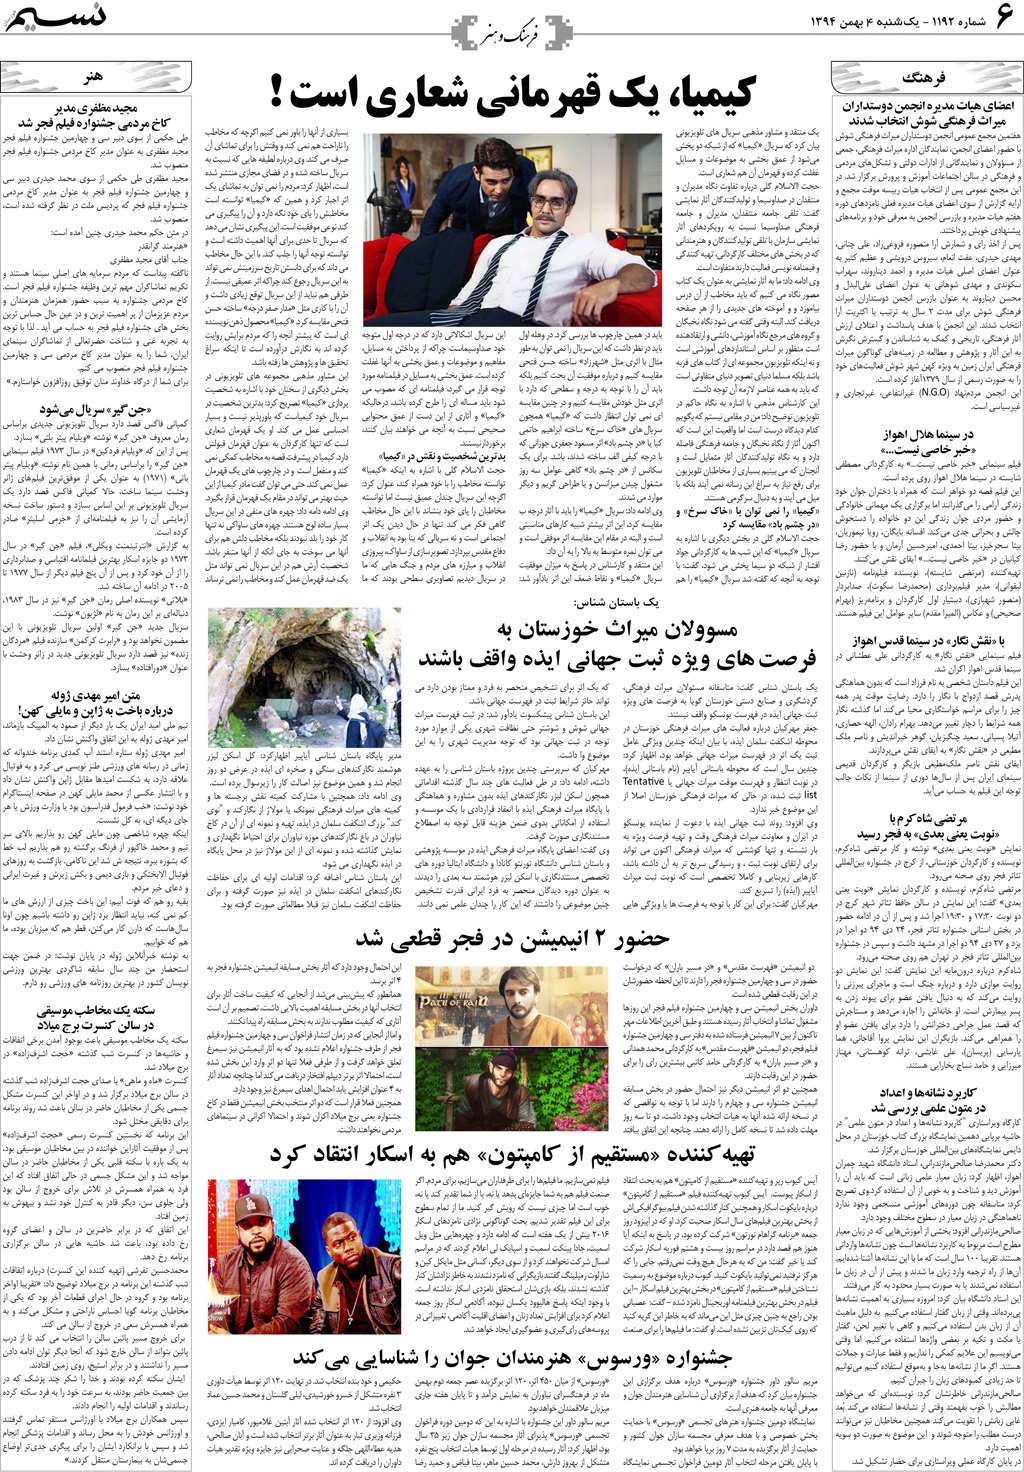 صفحه فرهنگ و هنر روزنامه نسیم شماره 1192